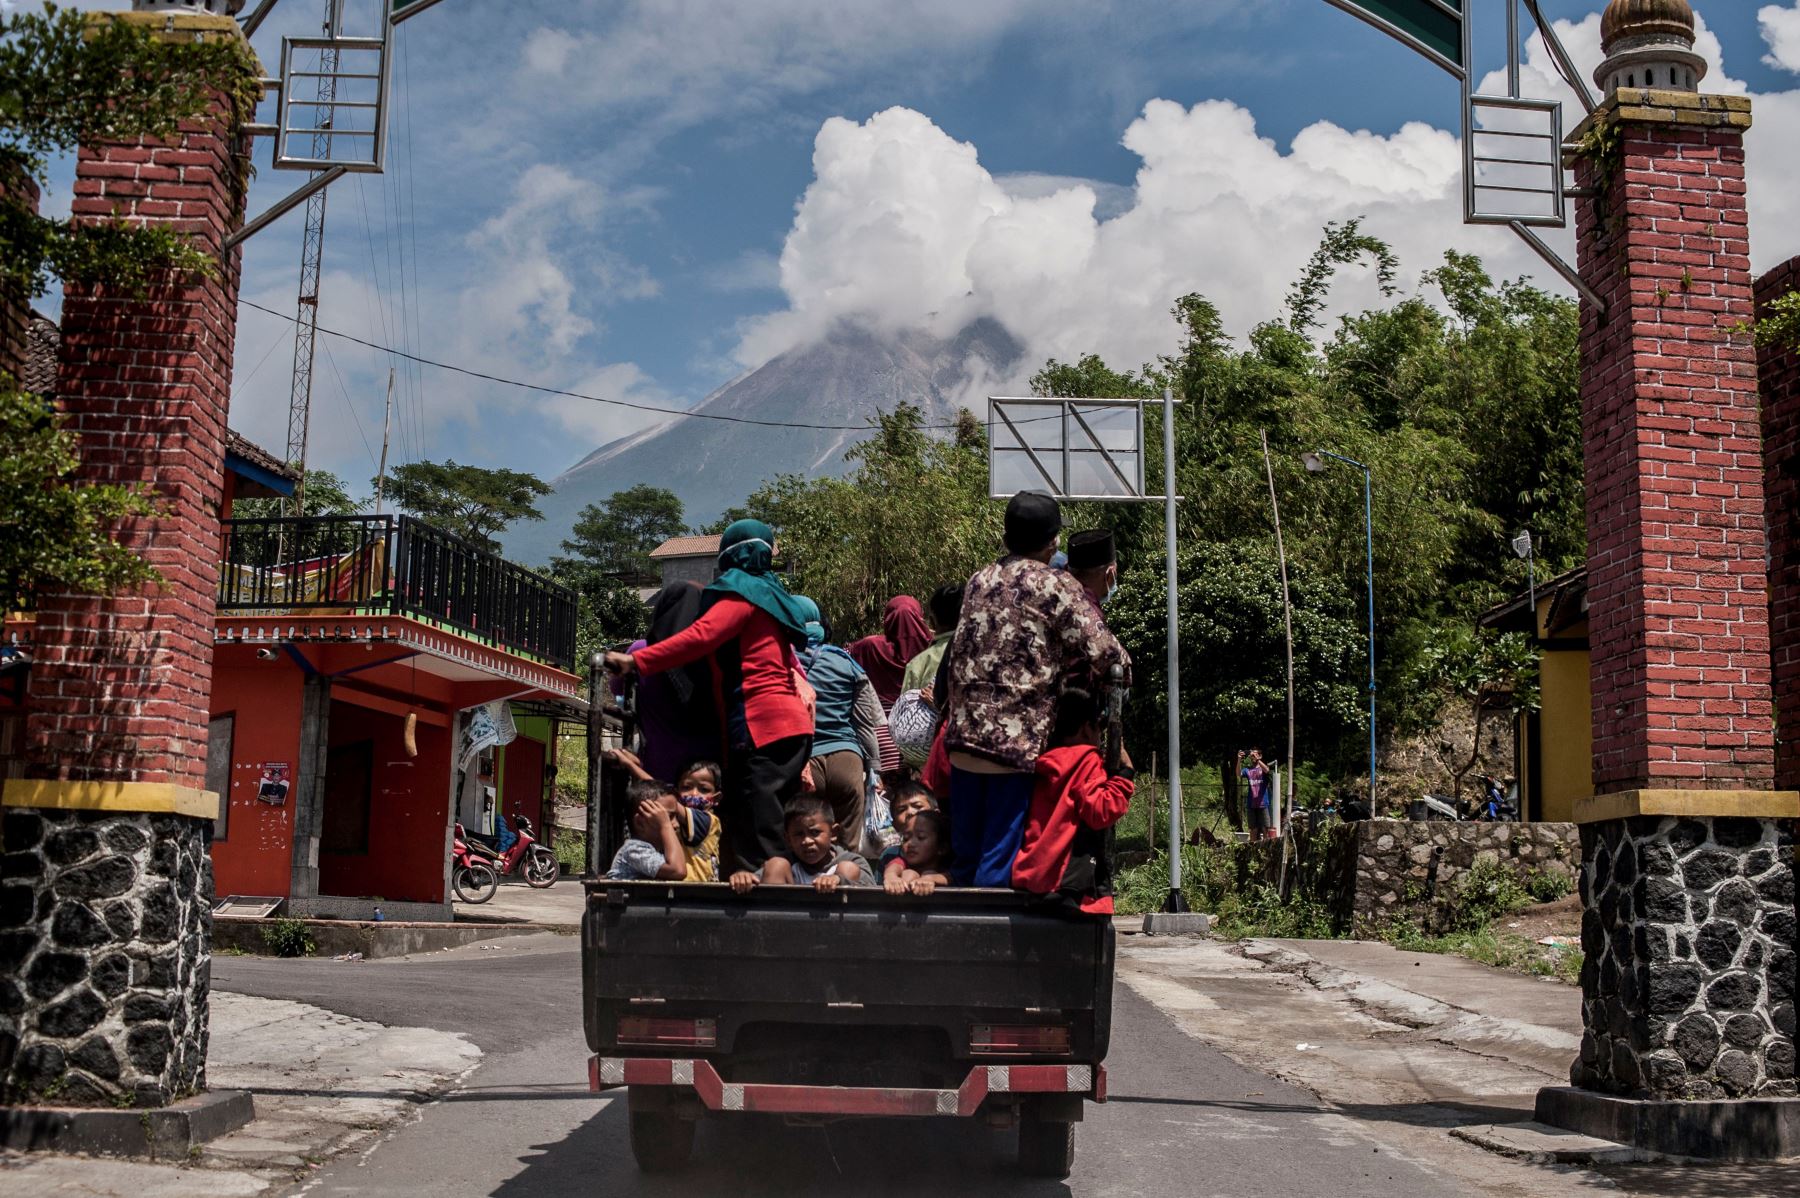 Volcán indonesio, Mount Merapi, entra en erupción y arroja ceniza caliente a tres kilómetros de distancia. Foto: AFP